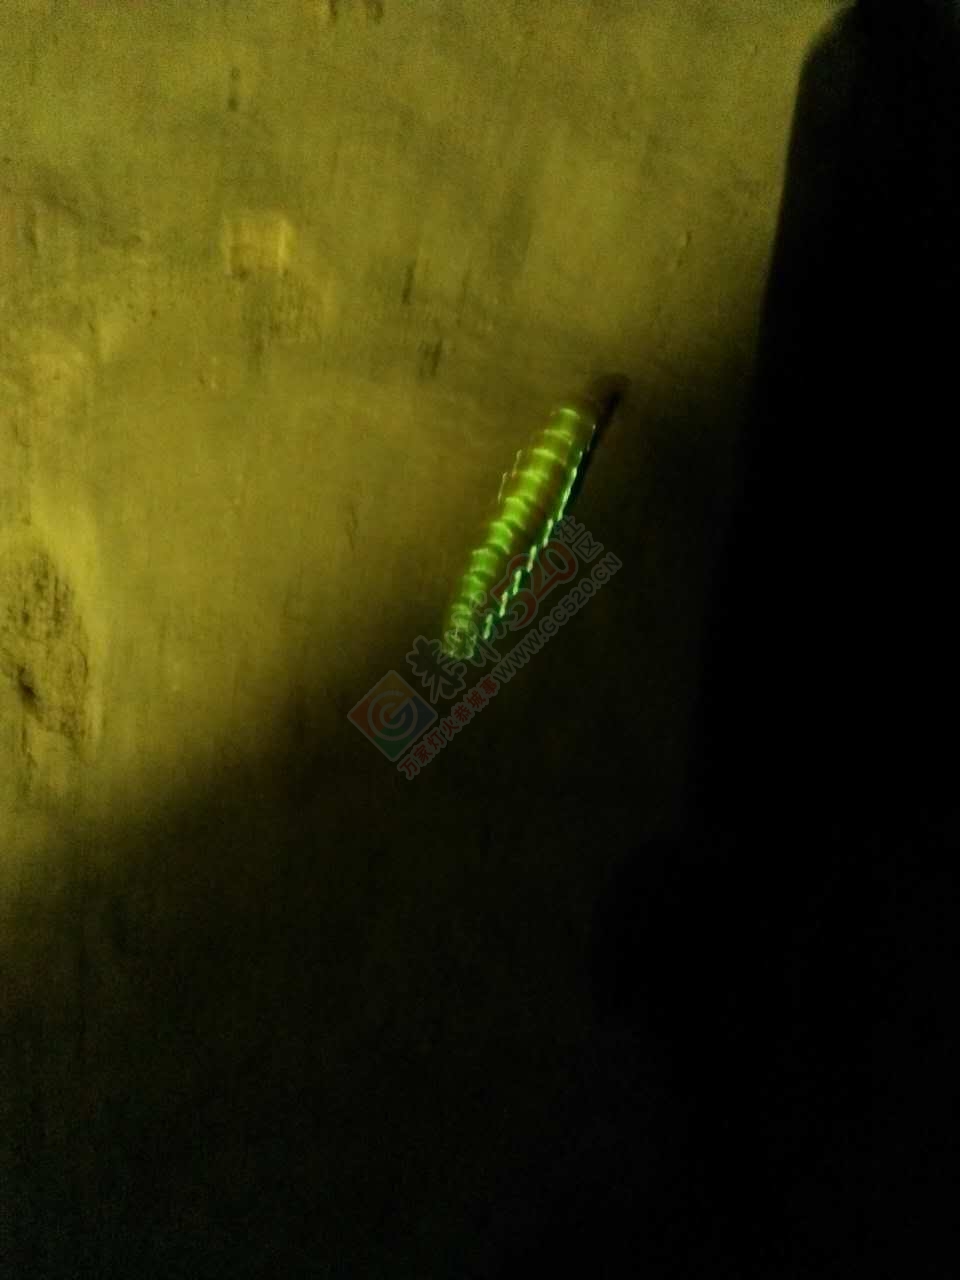 在三江黄坪发现一条蚕虫，居然全身会发光。。。967 / 作者:三江黄坪 / 帖子ID:232150